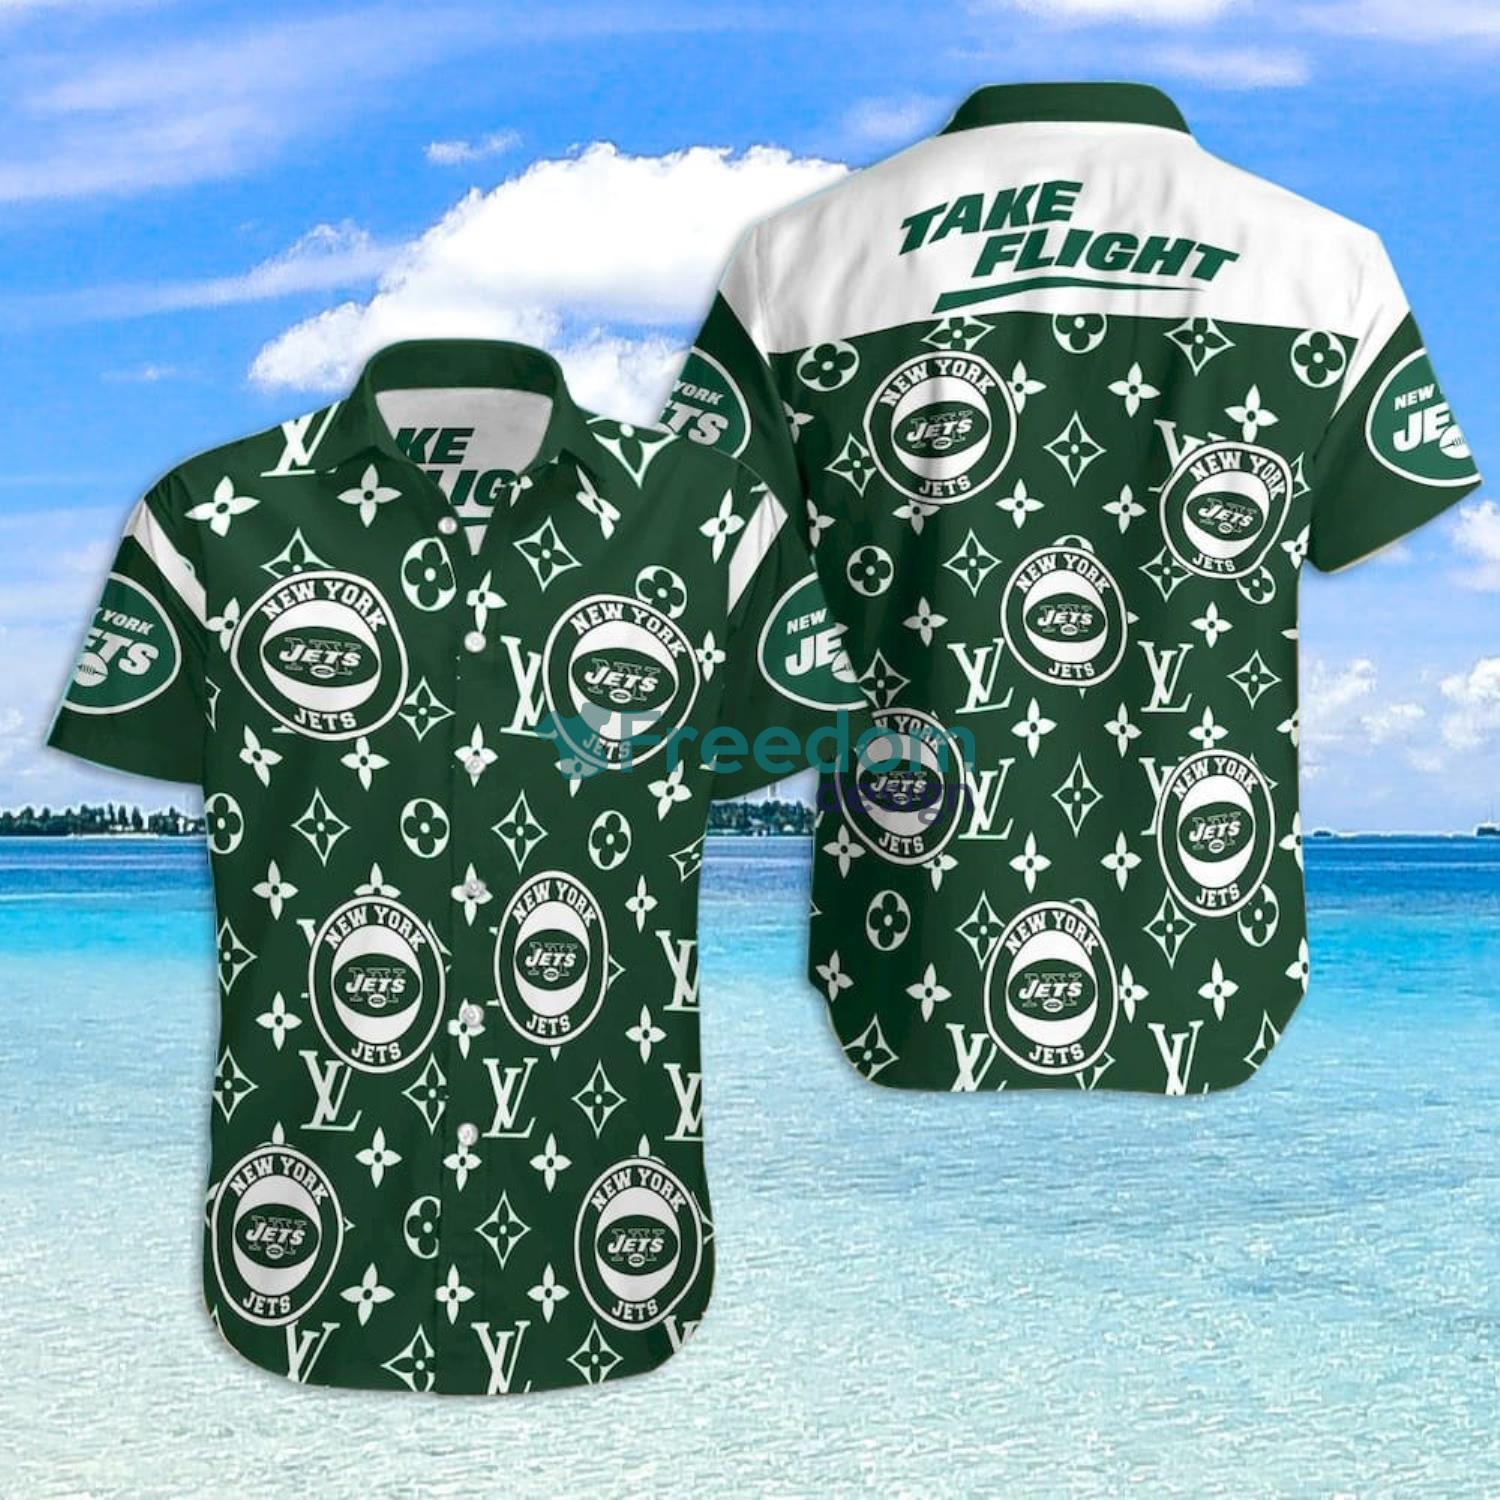 NFL New York Giants Fans Louis Vuitton Hawaiian Shirt For Men And